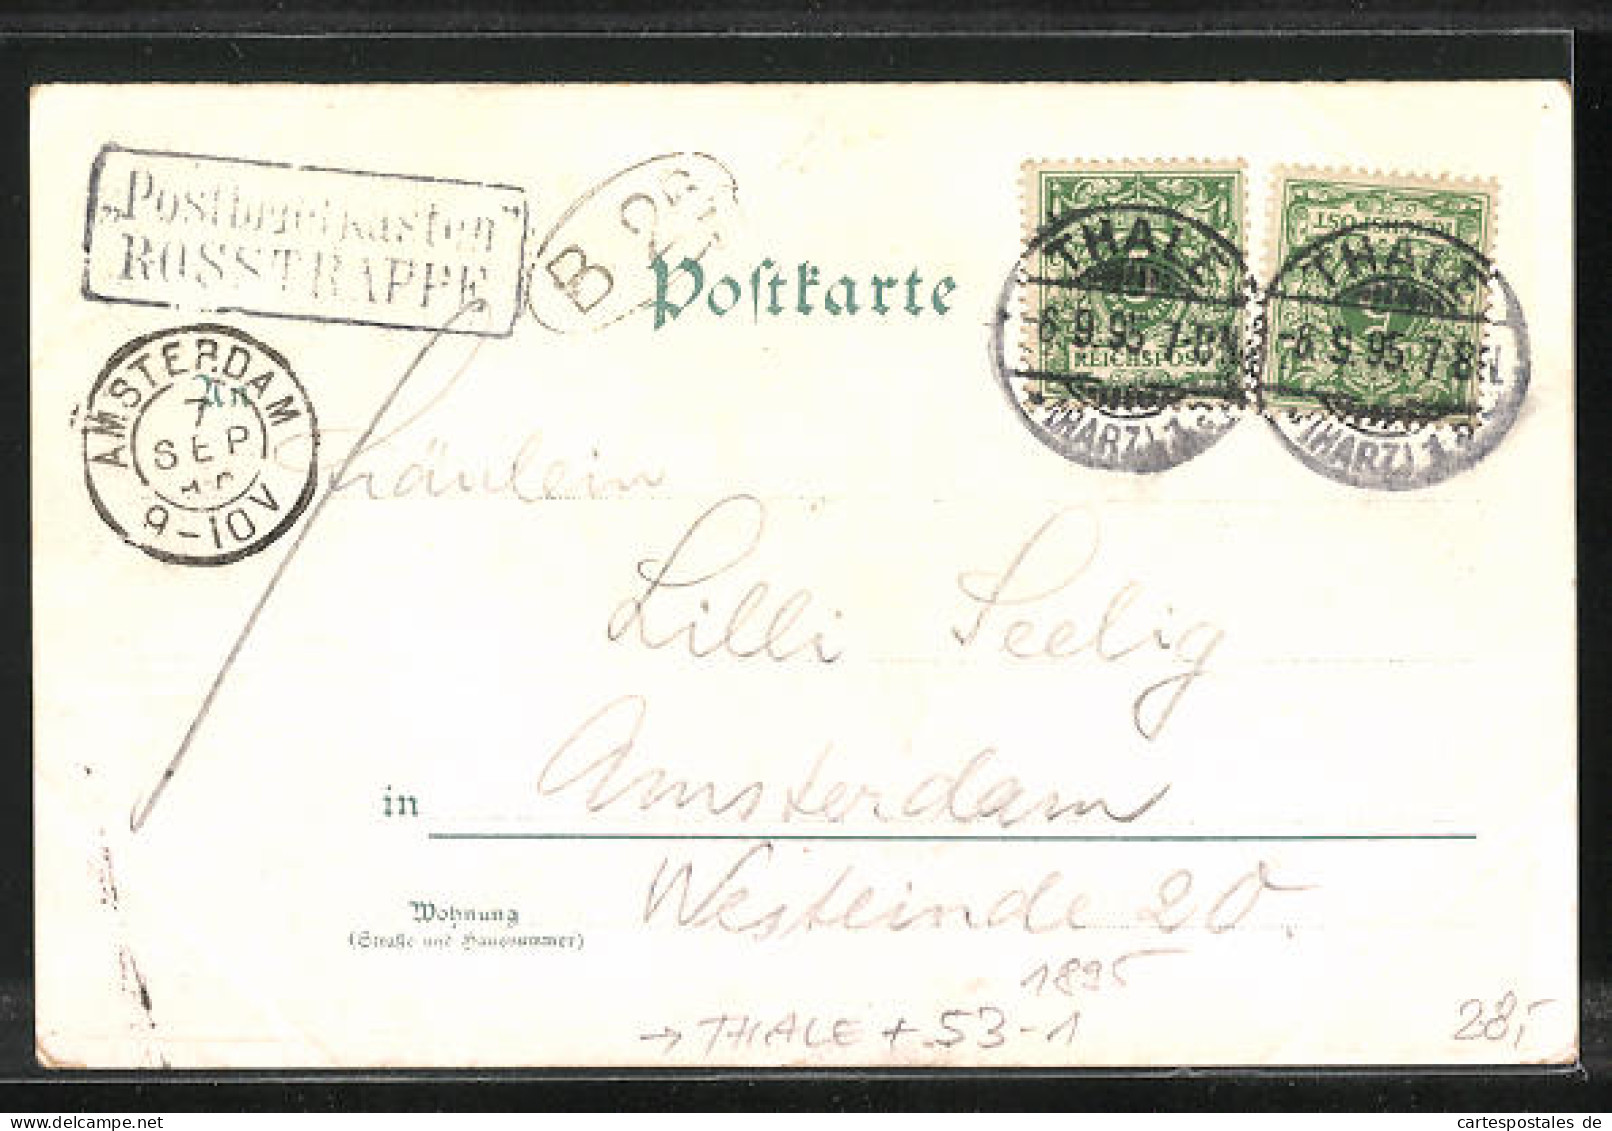 Vorläufer-Lithographie Thale, 1895, Hotel Zur Rosstrappe, Winzenburg  - Thale